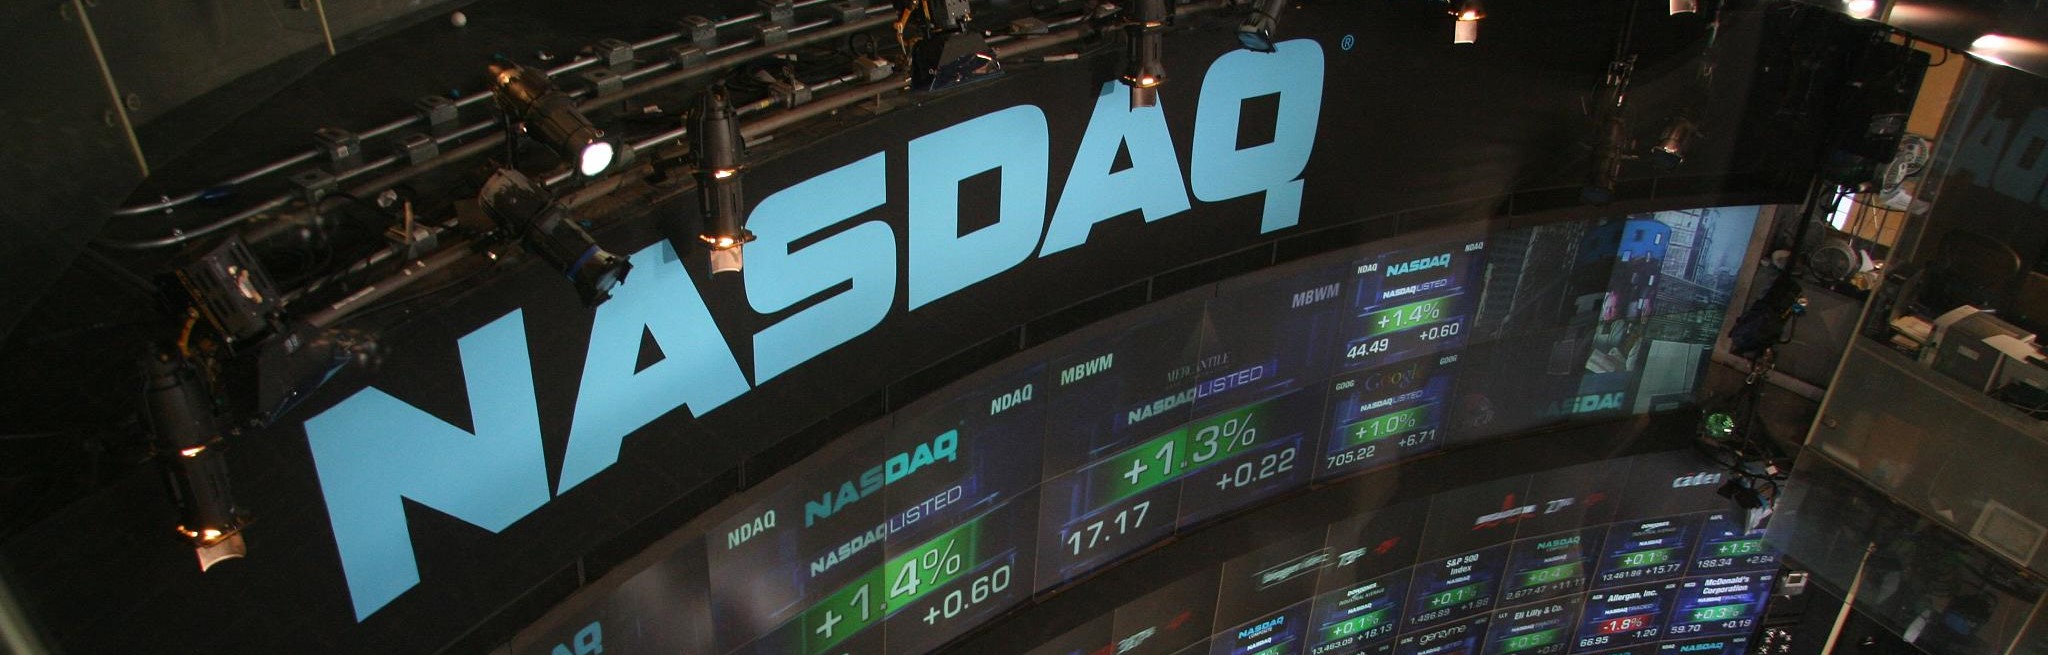 Криптокомпания Diginex провела листинг на бирже Nasdaq